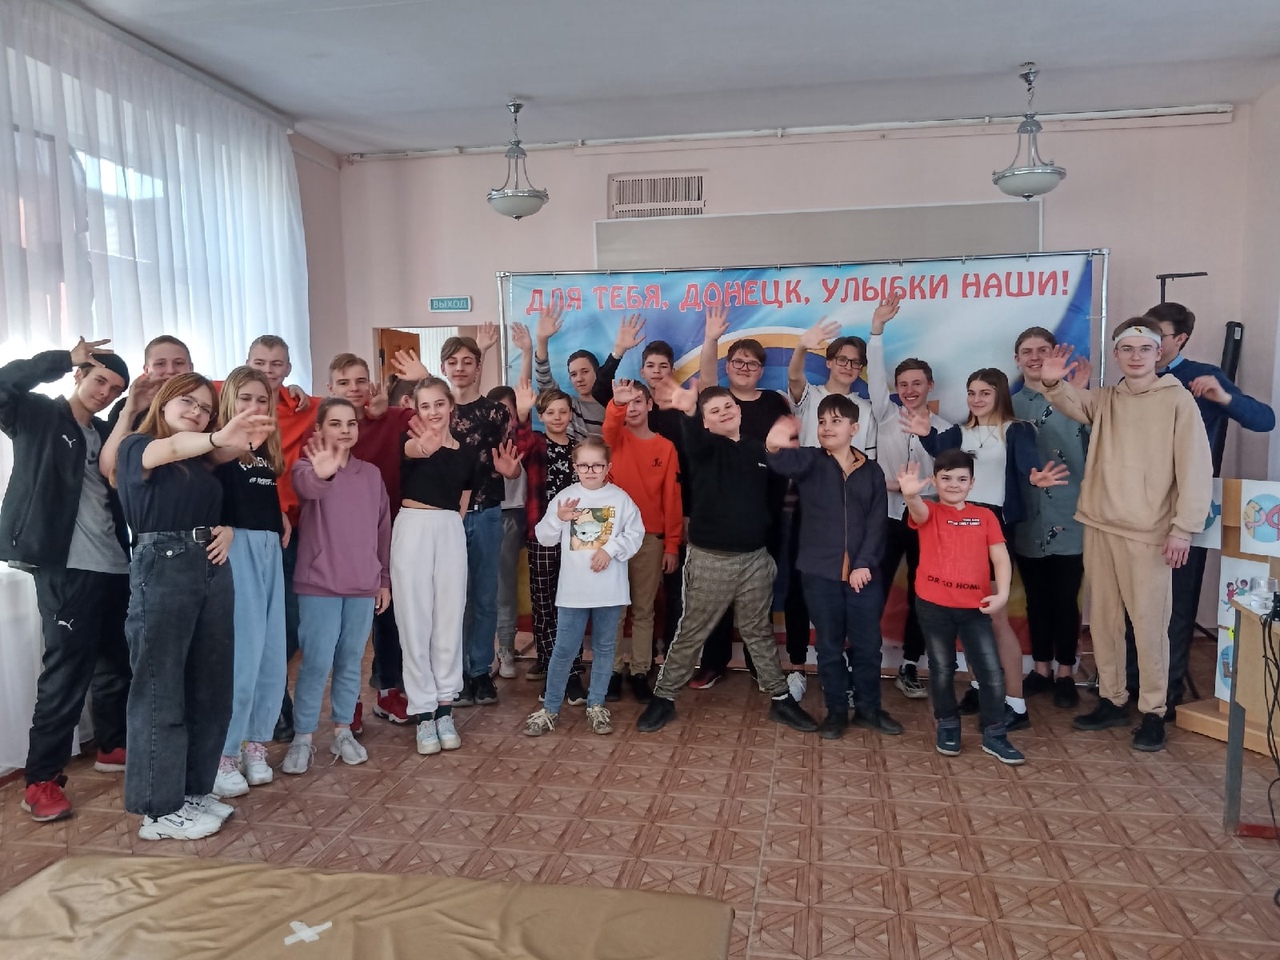 Приветствие участников конкурса «Россия туристическая глазами детей»